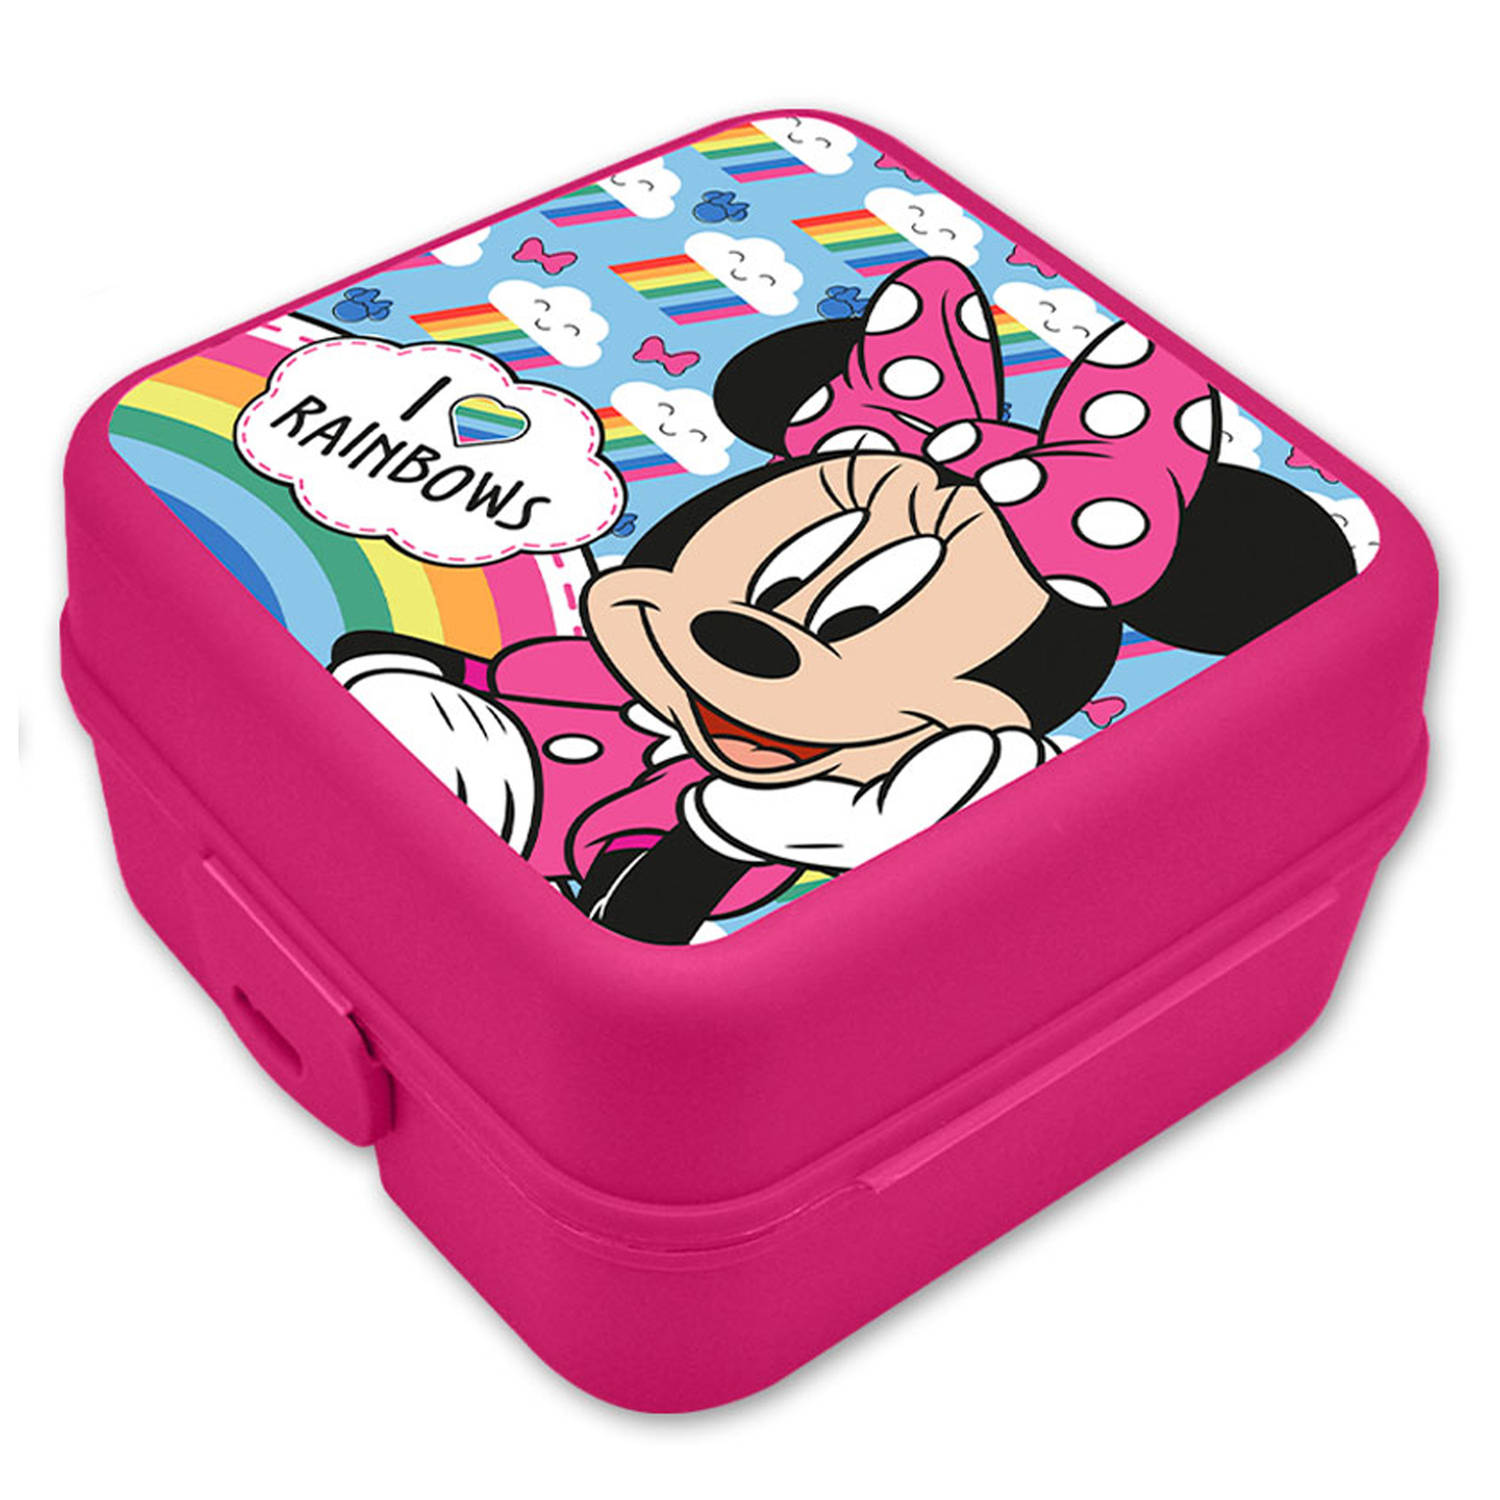 Disney Minnie Mouse broodtrommel/lunchbox voor kinderen - roze - kunststof - 14 x 8 cm